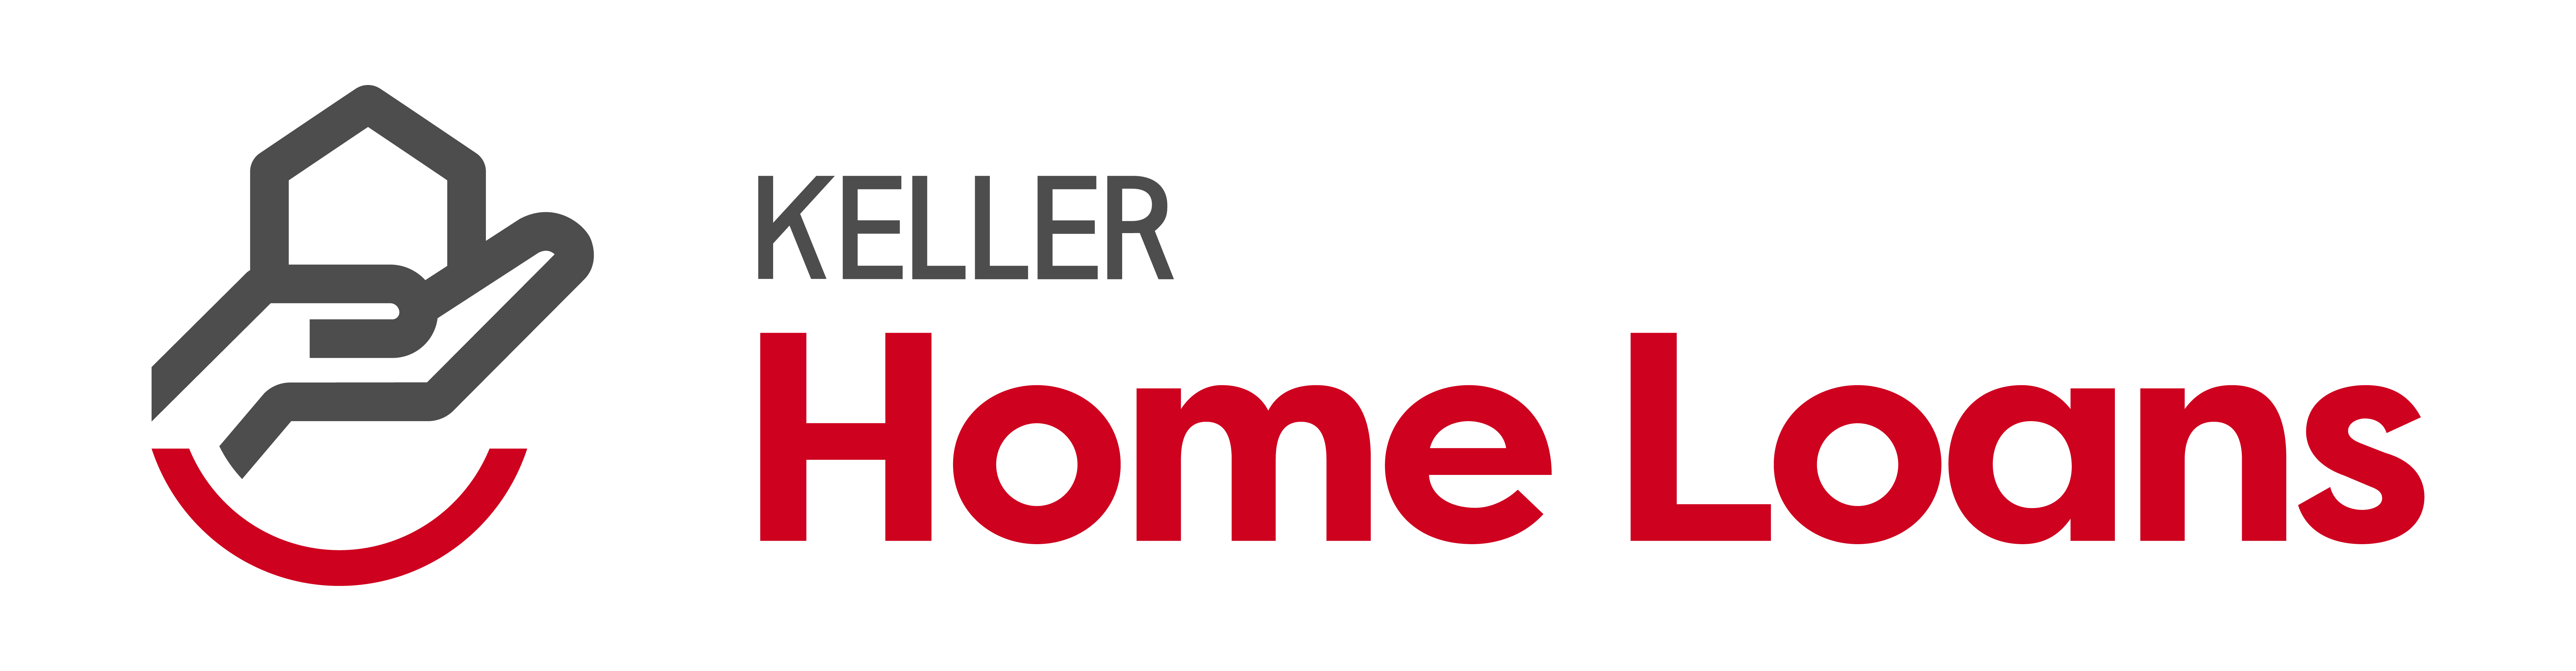 Keller Home Loans.